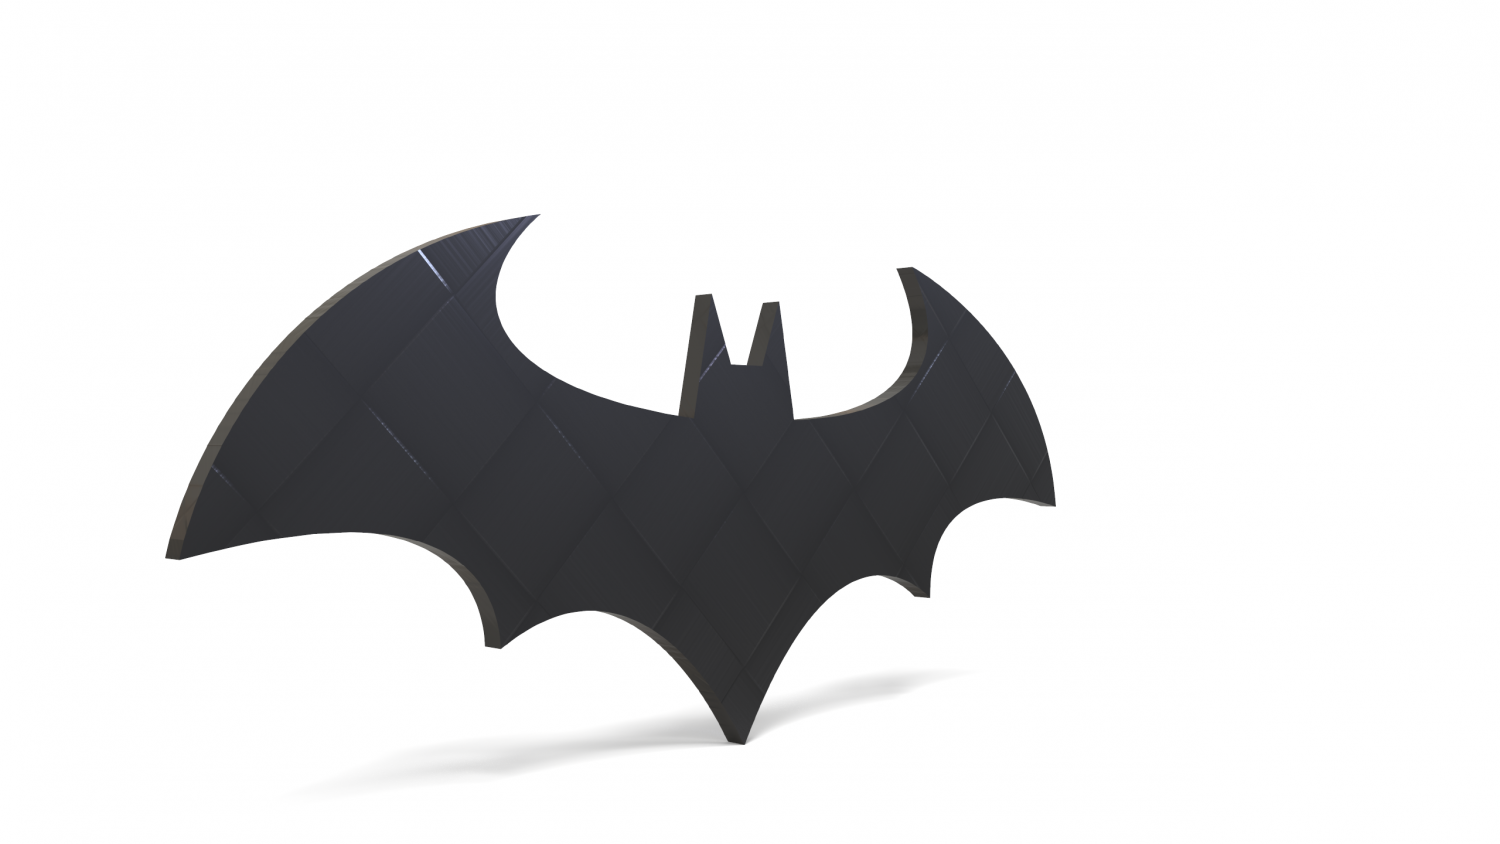 batman emblem printable